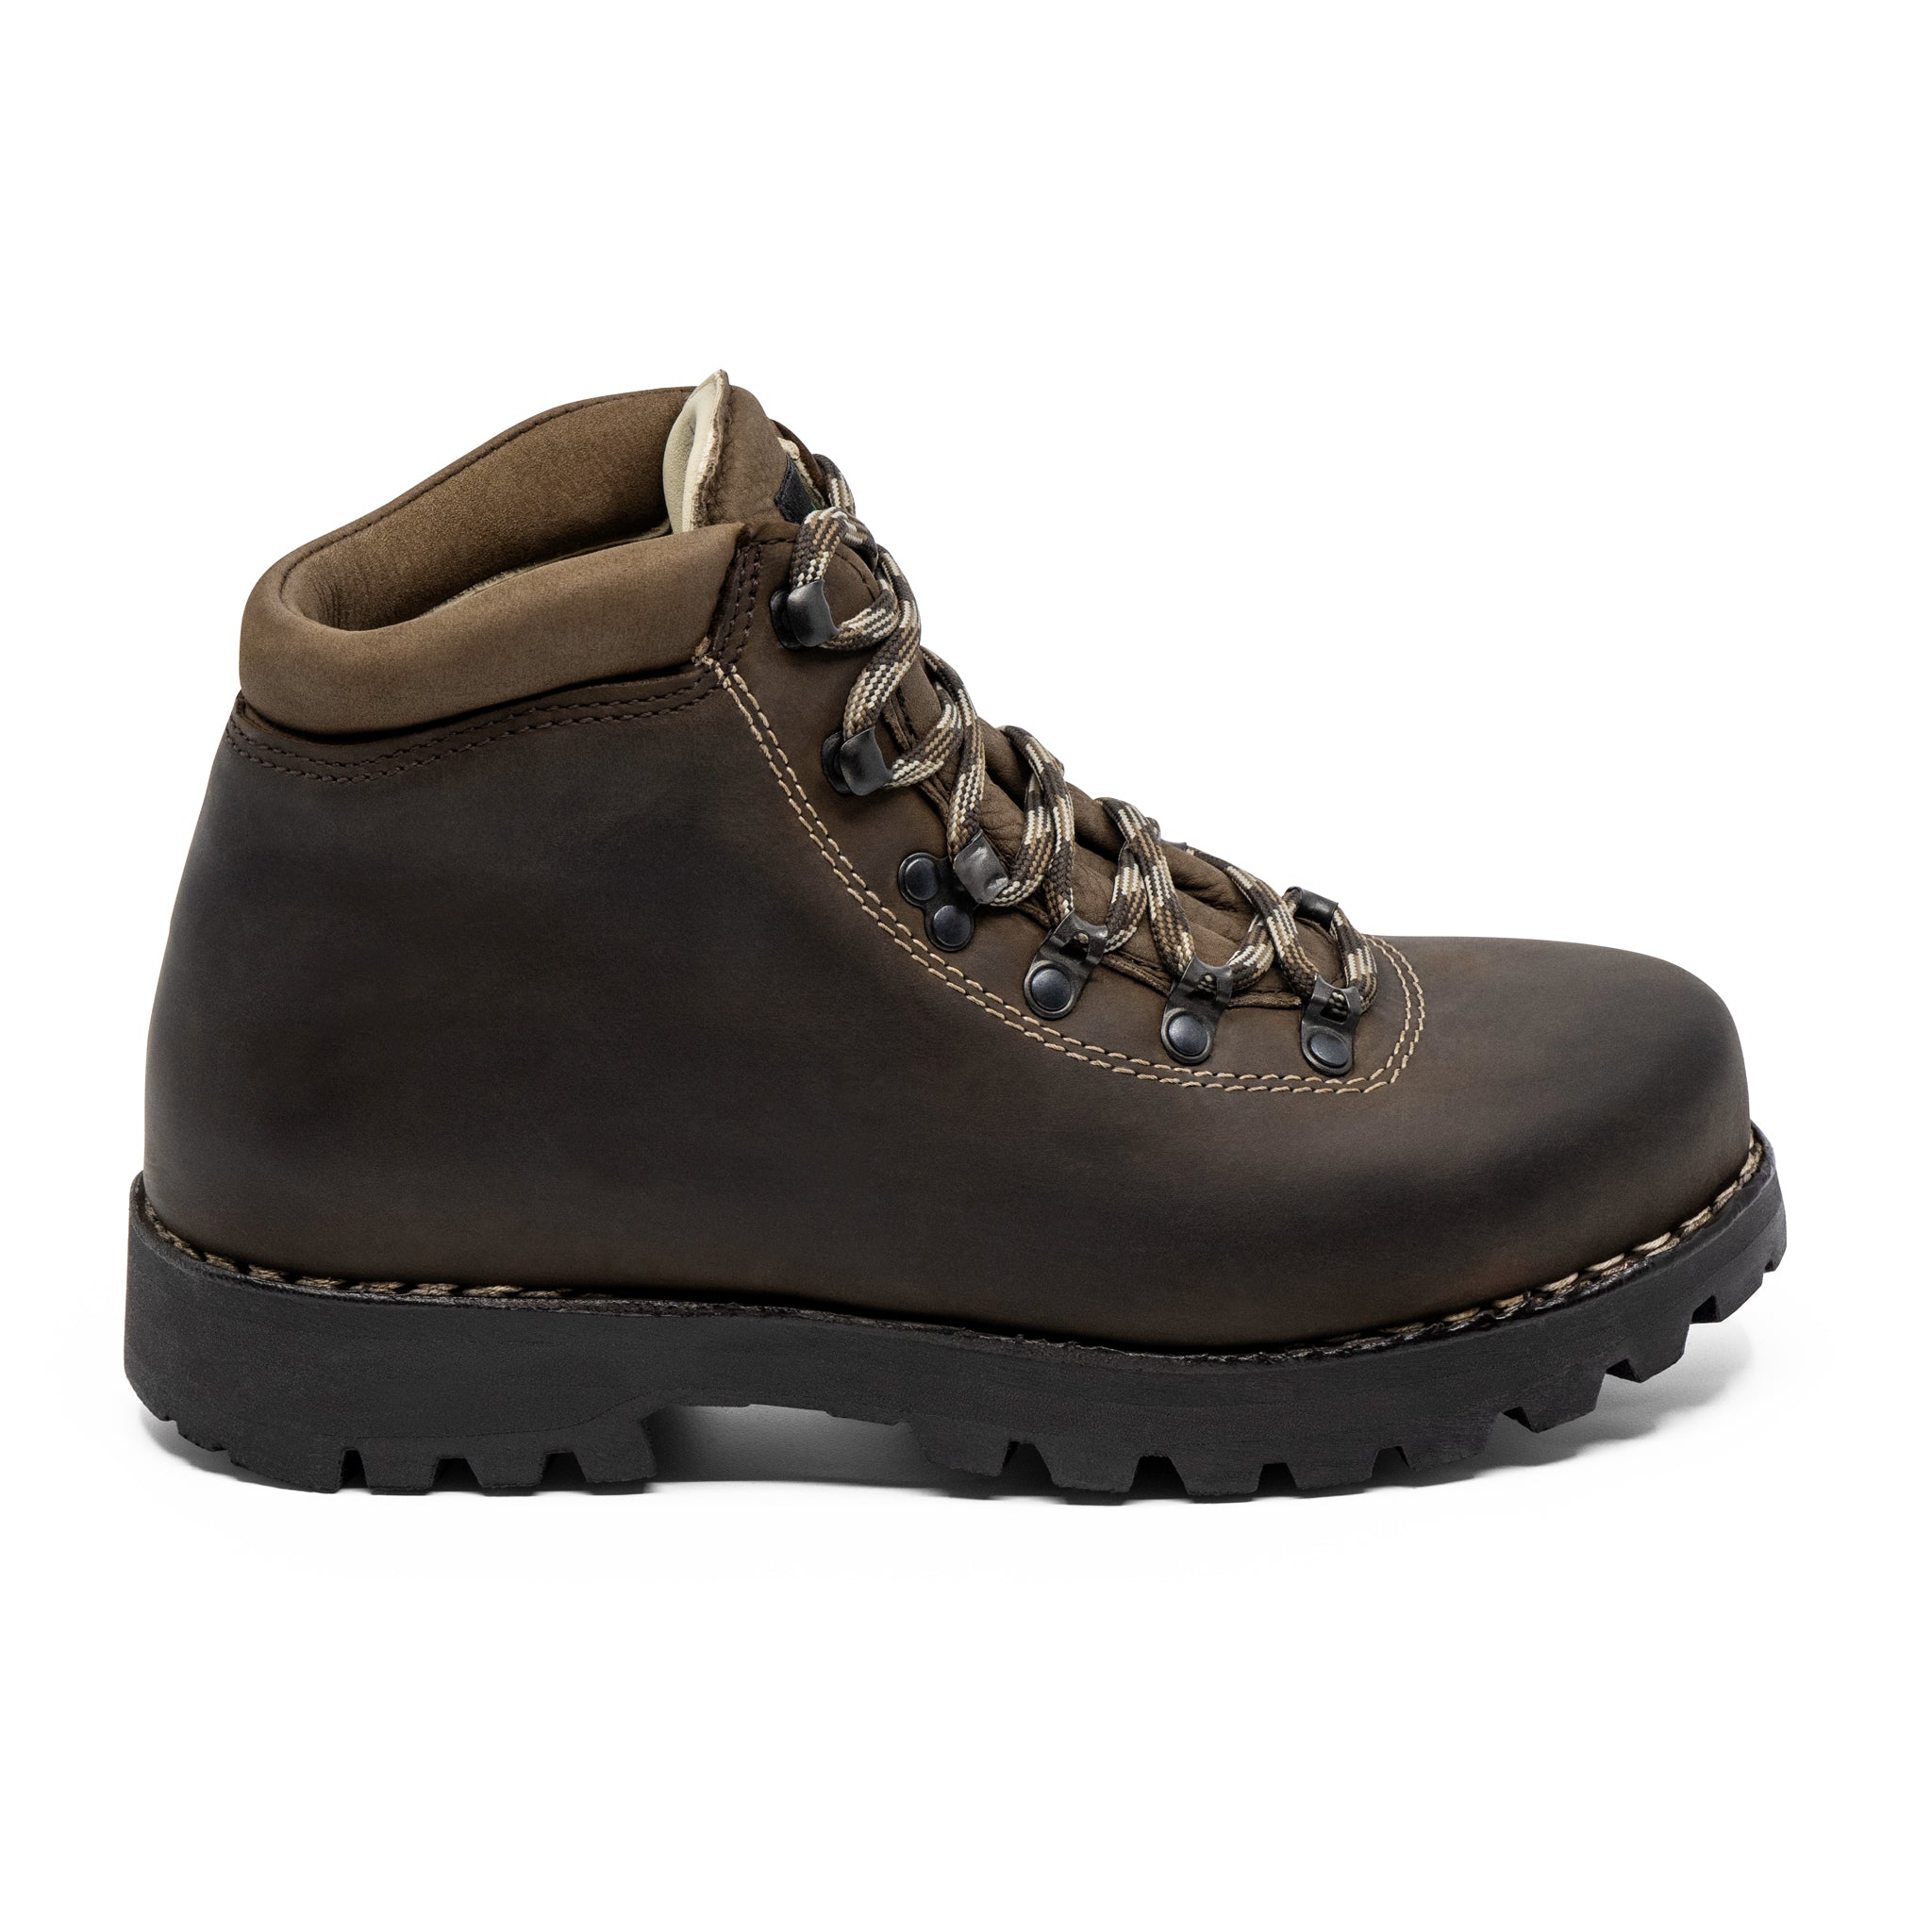 Shop Men's Hiking Boots & Shoes